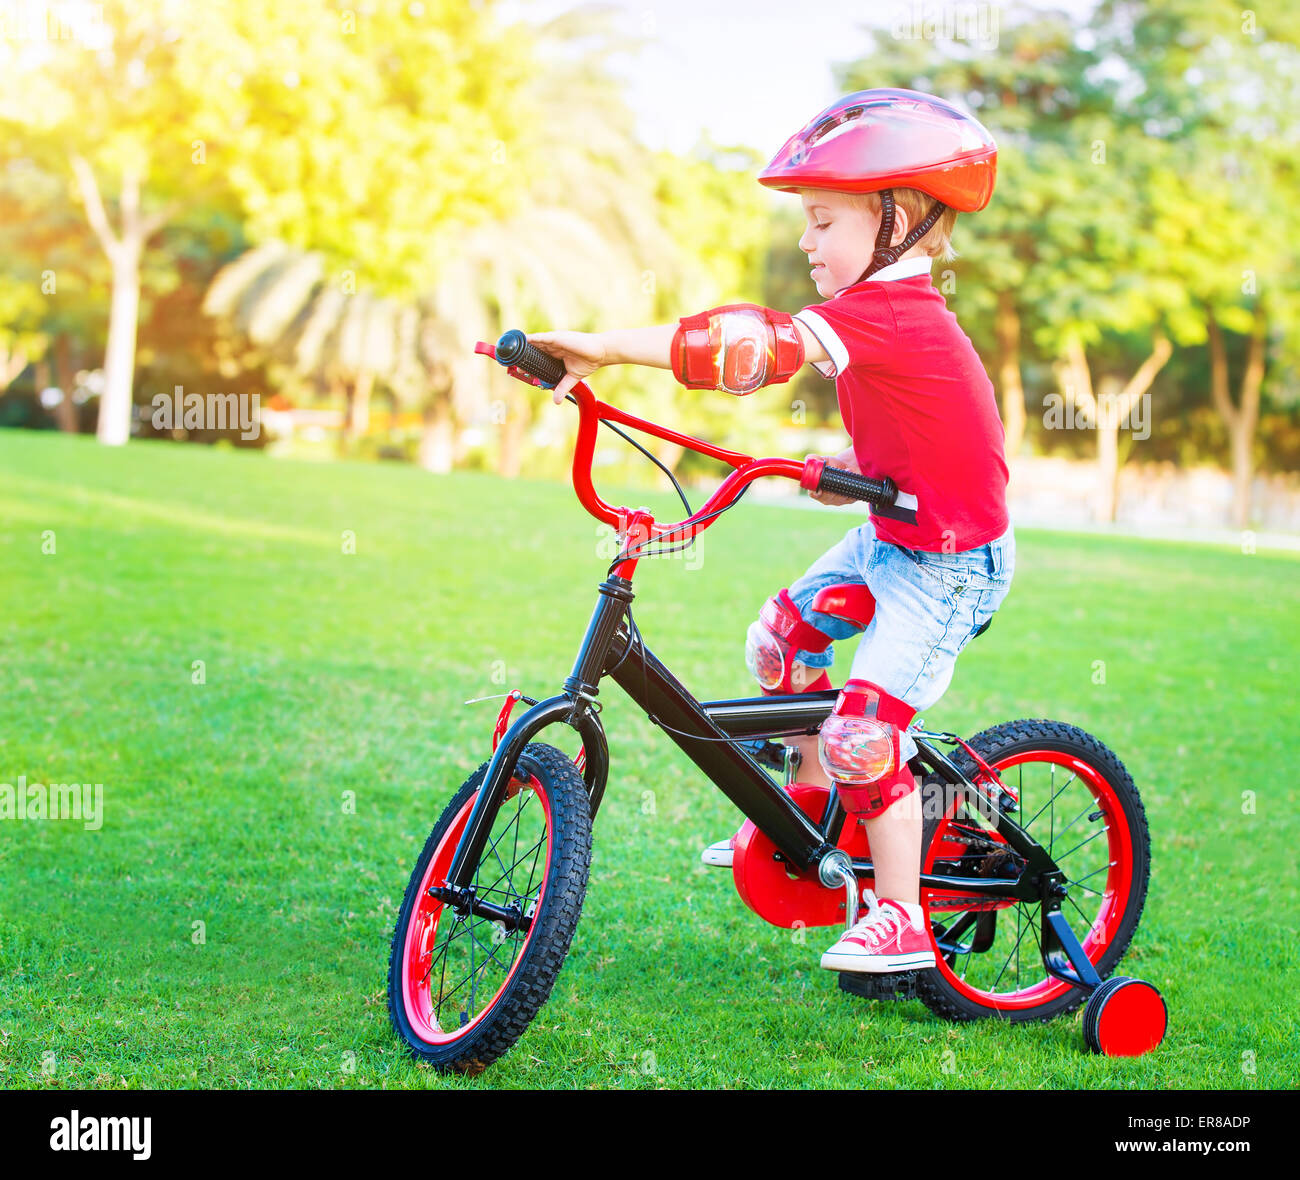 Kleiner Junge auf dem Fahrrad tragen rote Schutzhelm, Spaß im Park, aktive Kindheit genießen, Radfahren, Sommerferien Stockfoto